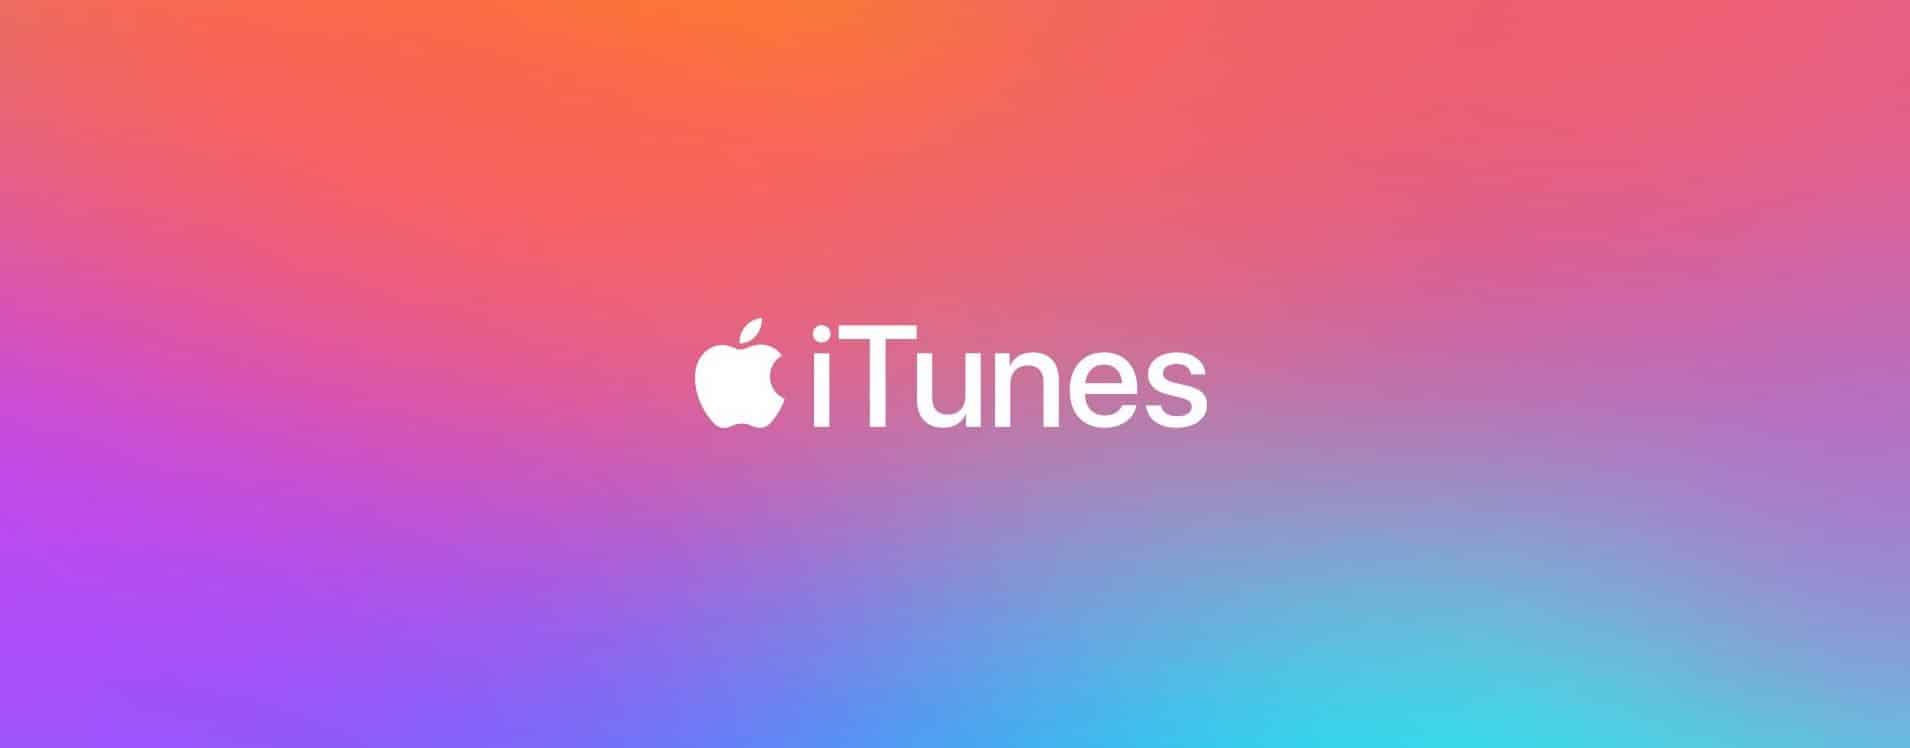 Apple accusée de vendre les données utilisateurs iTunes